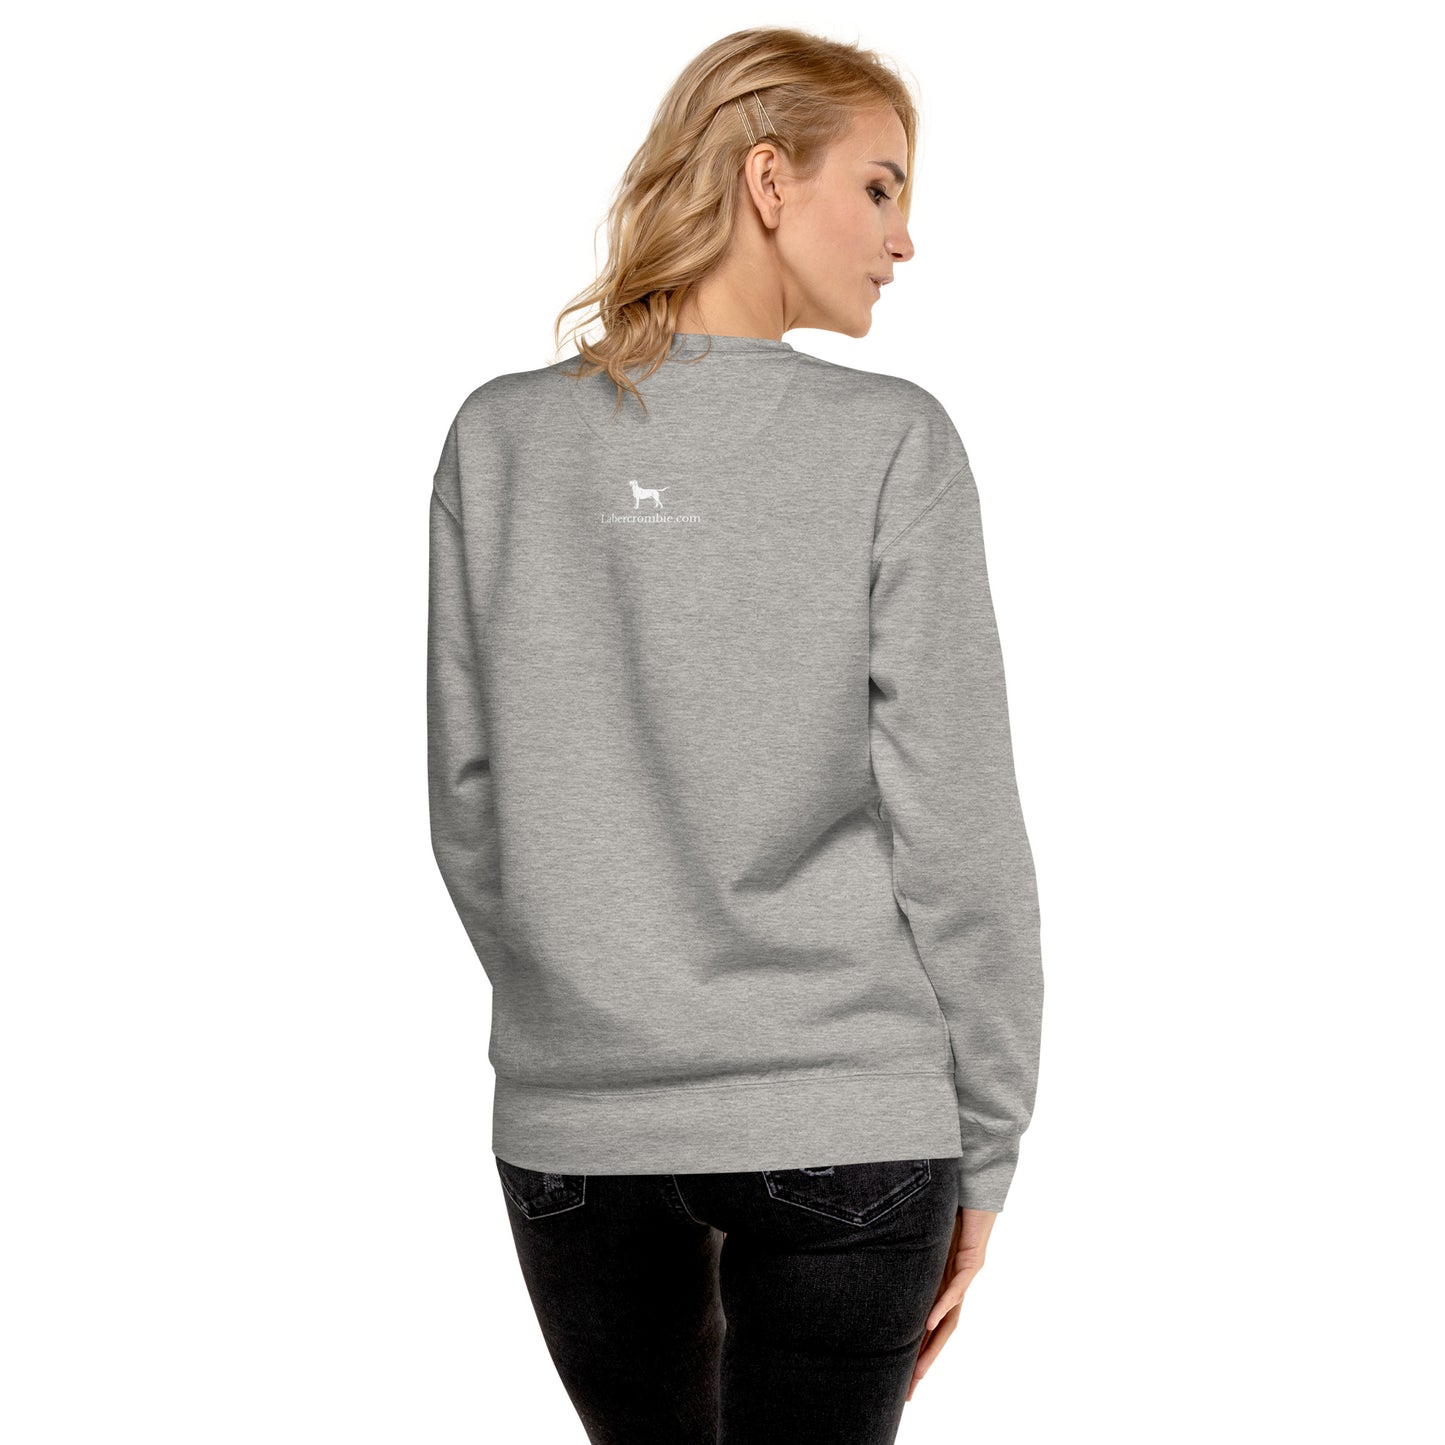 Regal Beagle Unisex Premium Sweatshirt